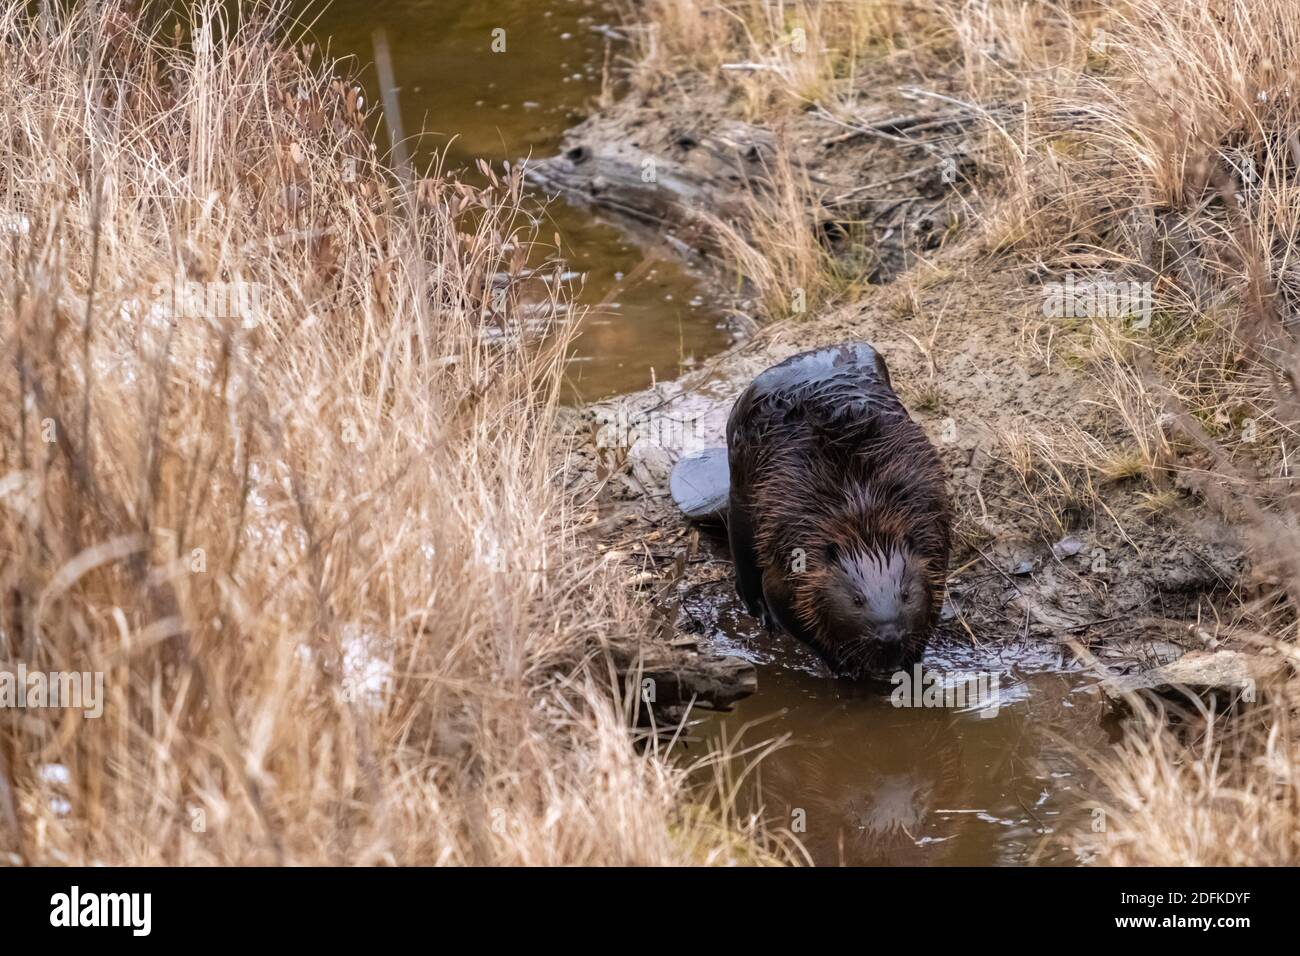 Un caster canadese si avvicina a una pozza d'acqua, che riflette il suo volto, mentre cammina attraverso il fango lasciando un laghetto castoro. Foto Stock